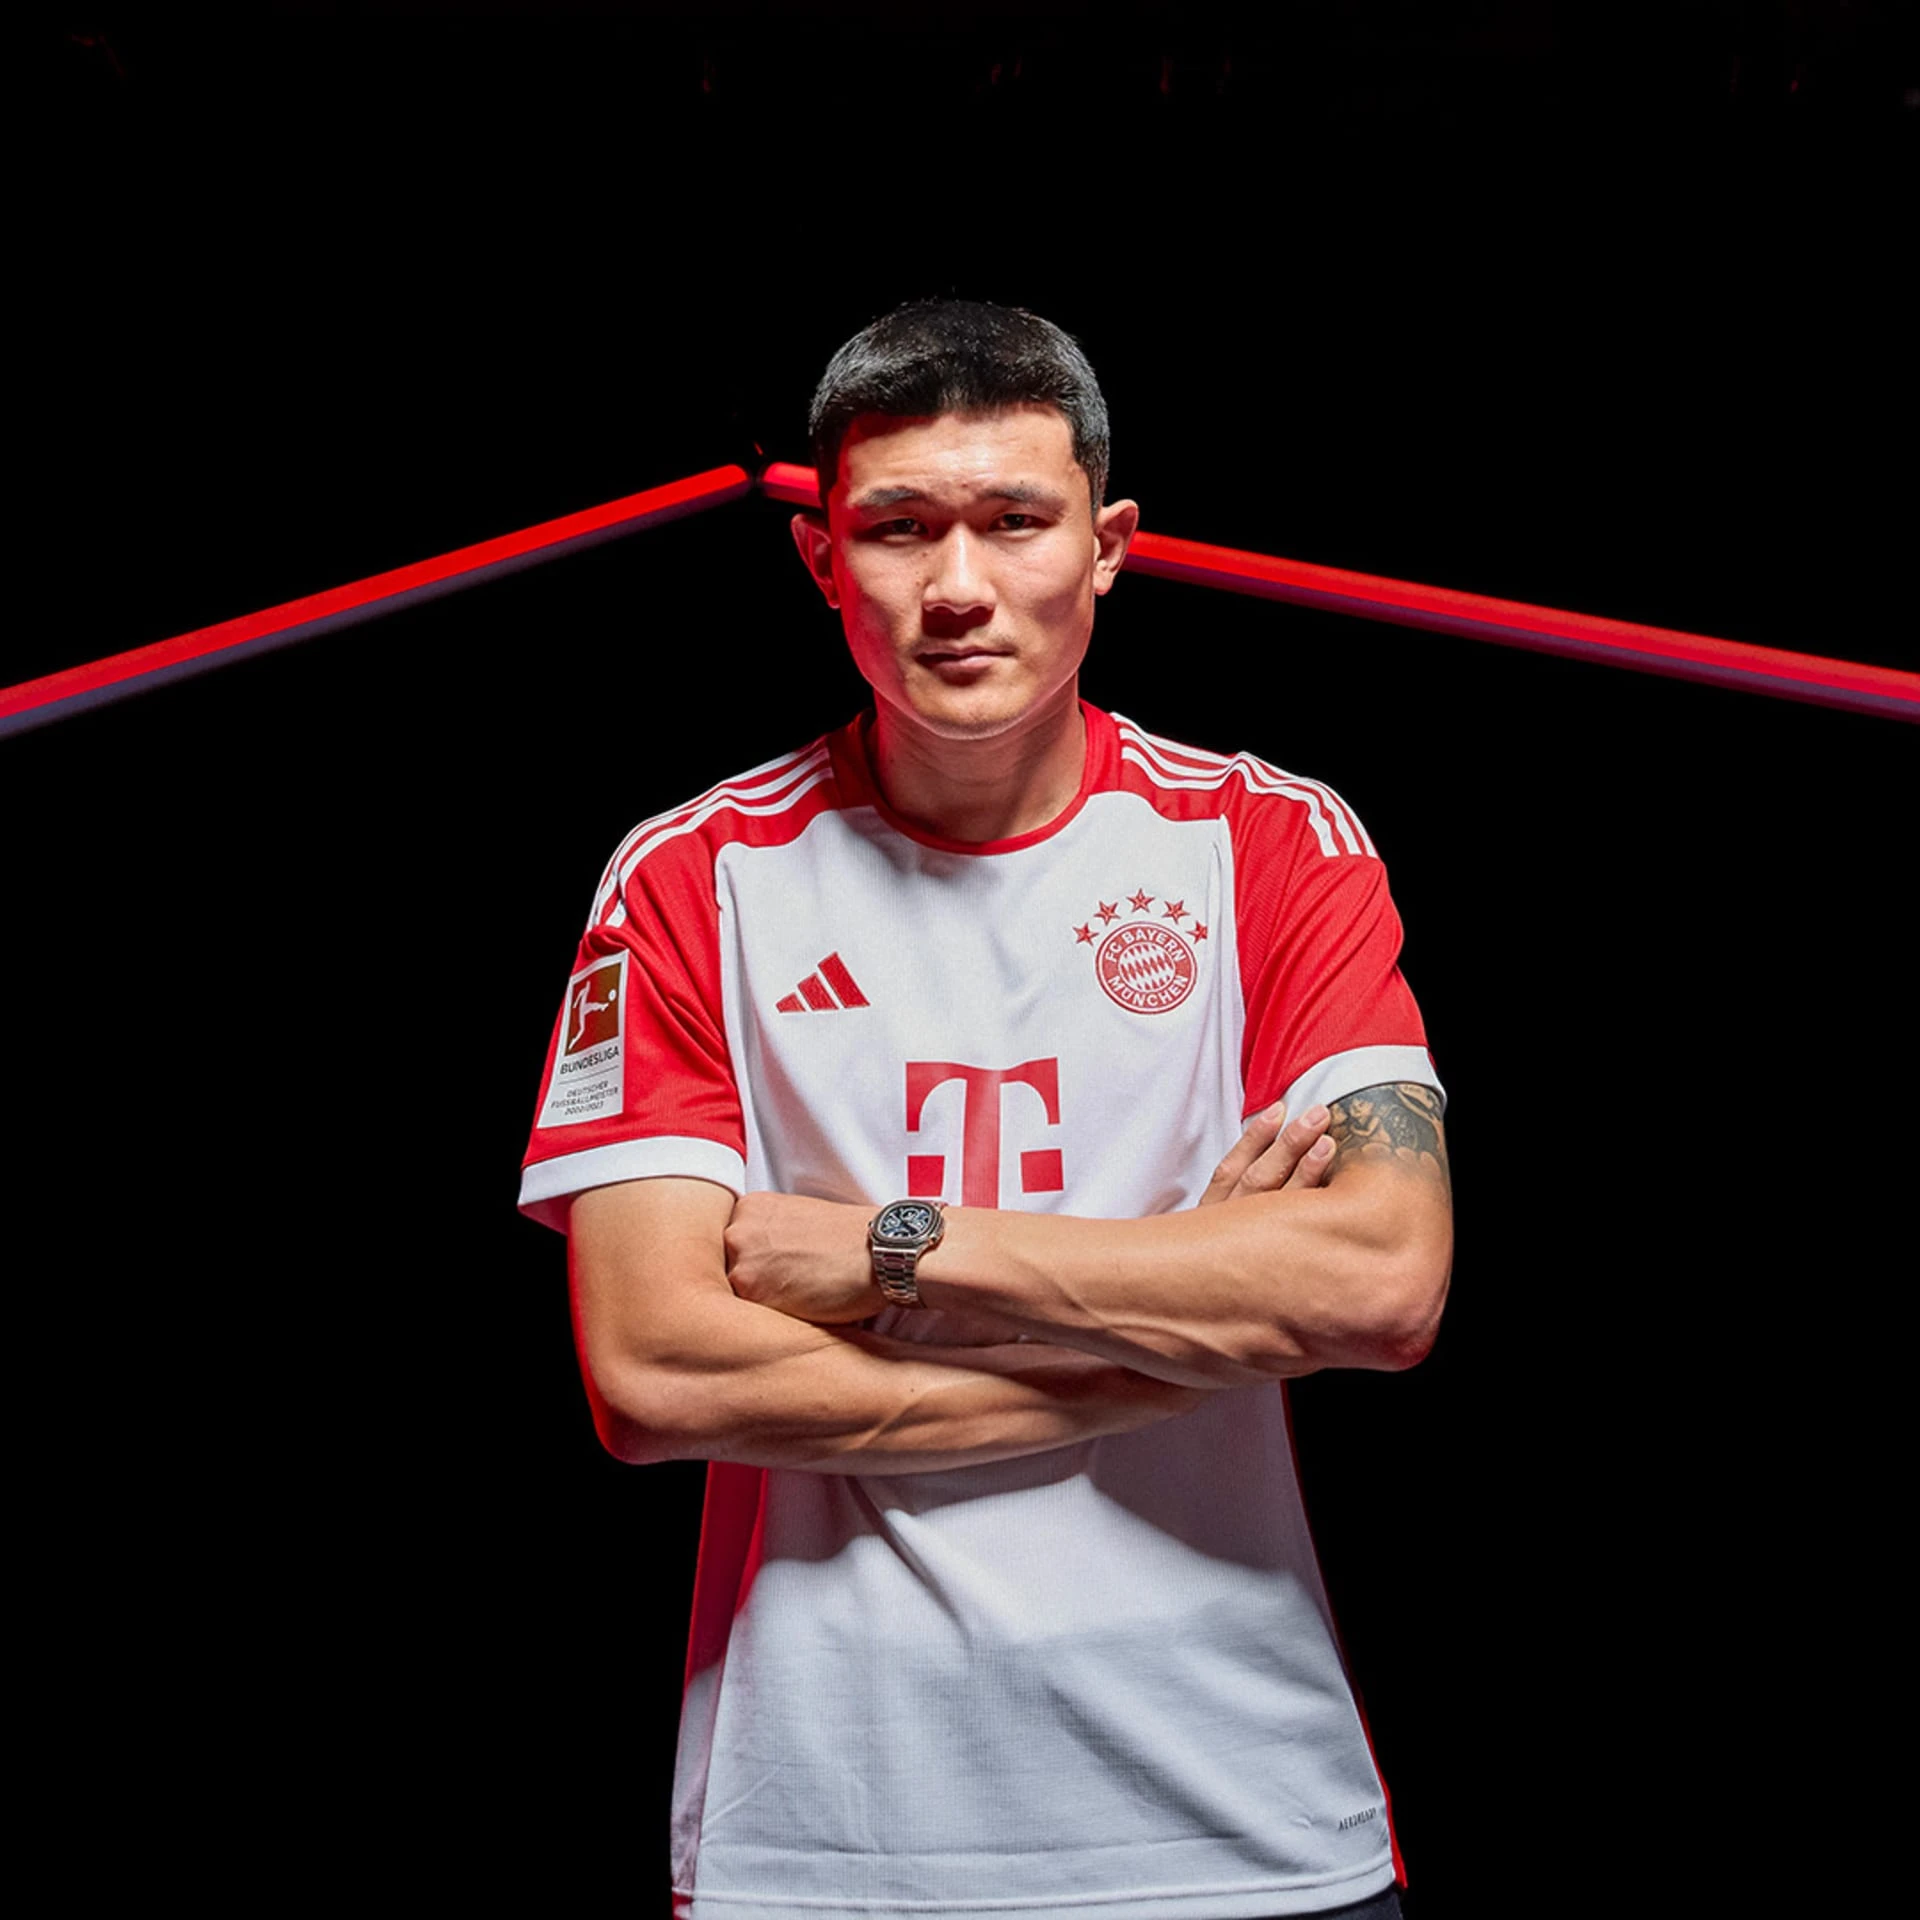 HLV Kim Sang-sik: Độc đáo hình ảnh nhảy hip hop và điều ít người biết với sao Bayern Munich